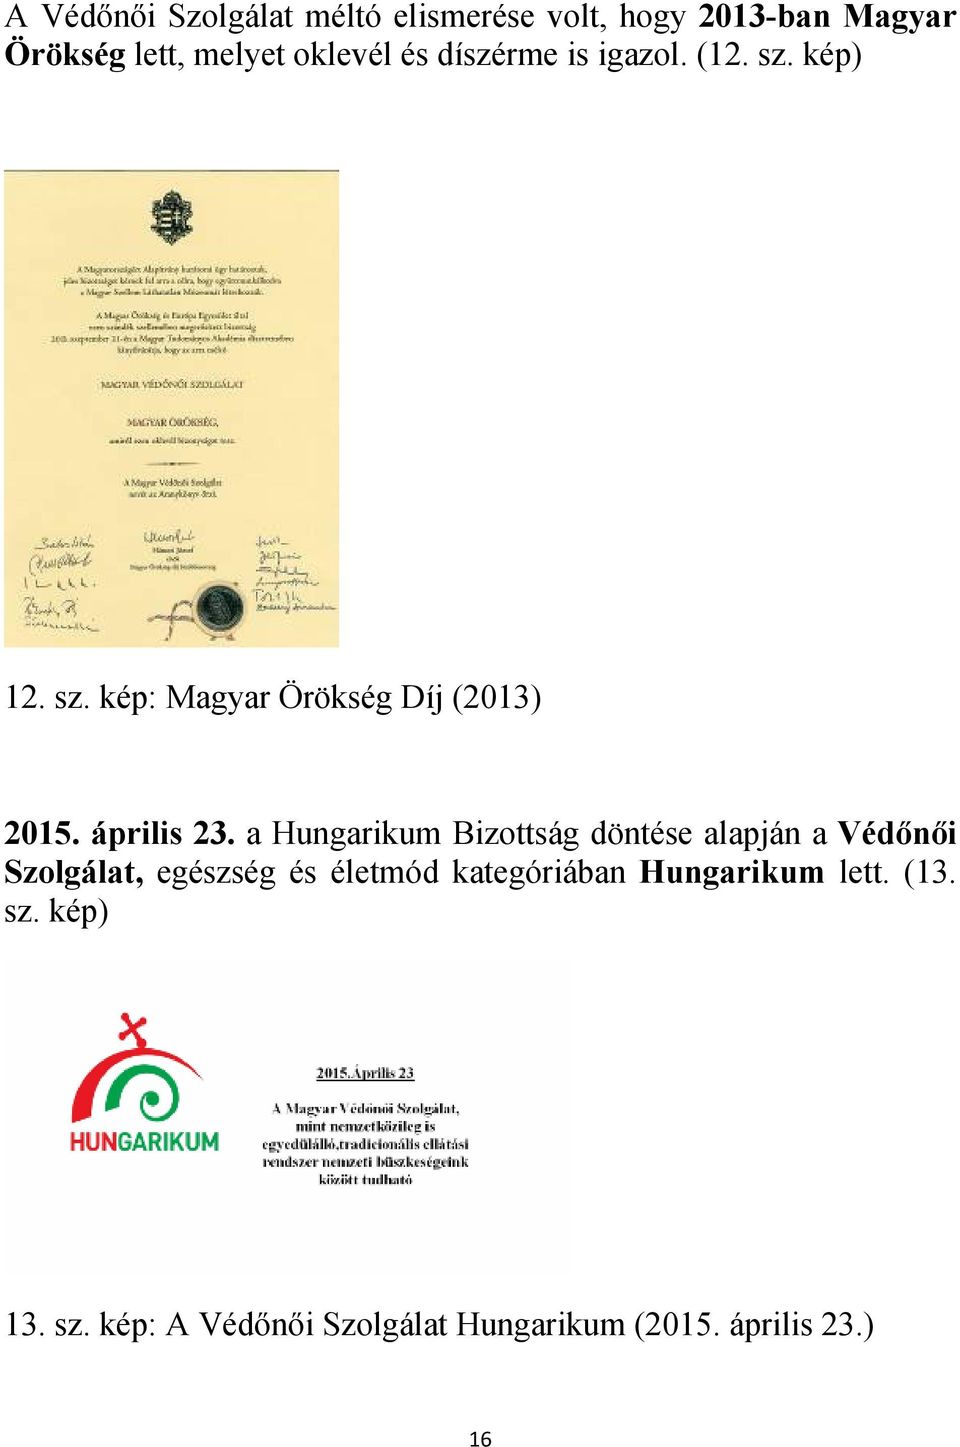 a Hungarikum Bizottság döntése alapján a Védőnői Szolgálat, egészség és életmód kategóriában